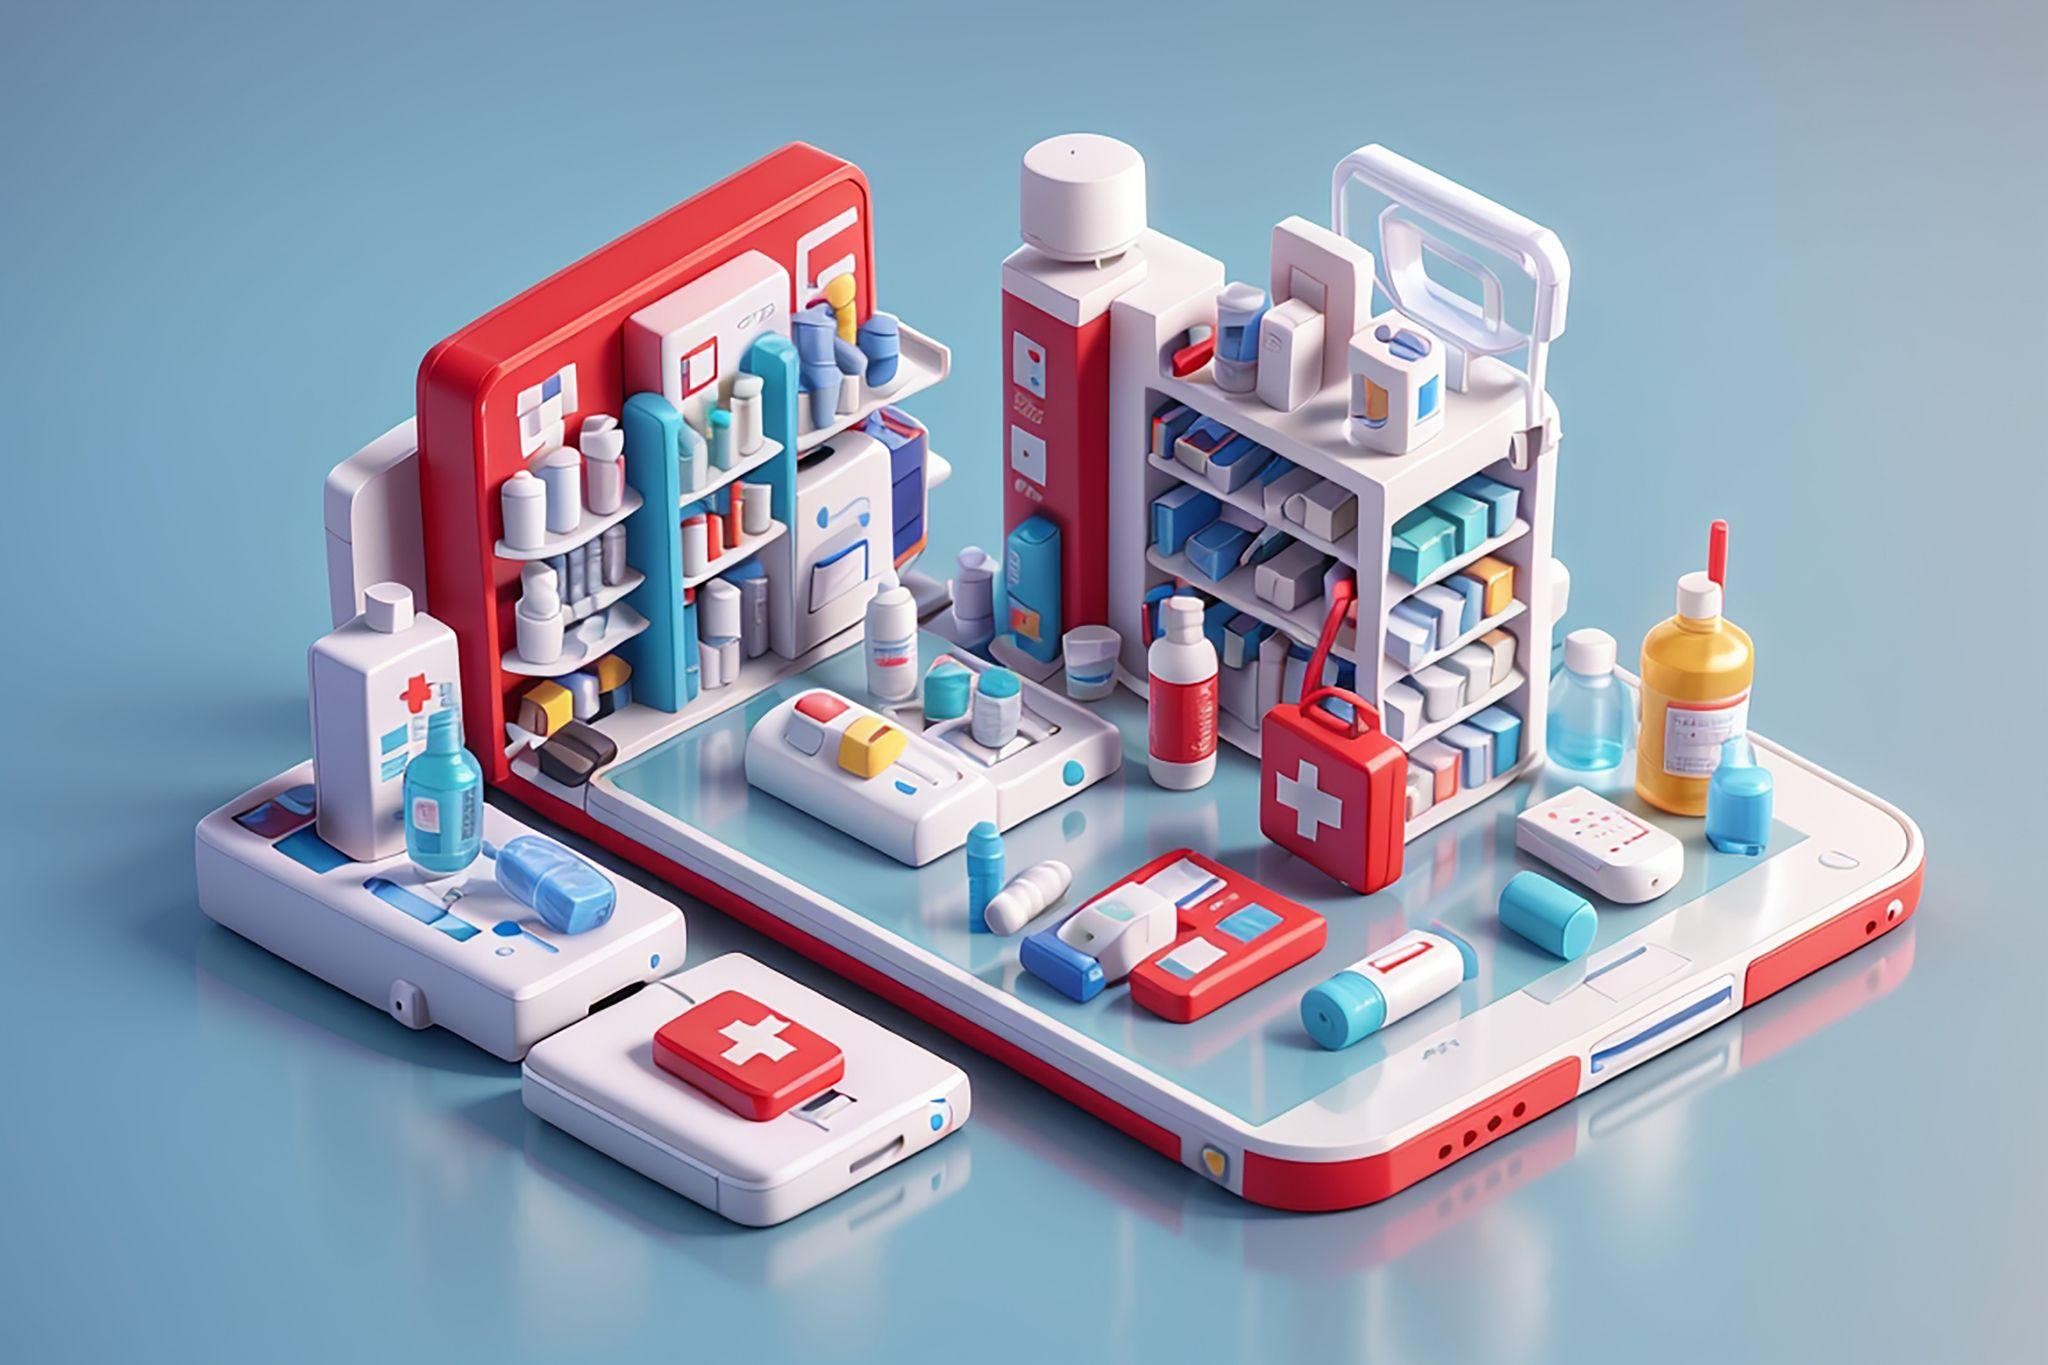 imagem de uma mini farmácia sobre um celular, representando as transformações digitais no setor farmacêutico